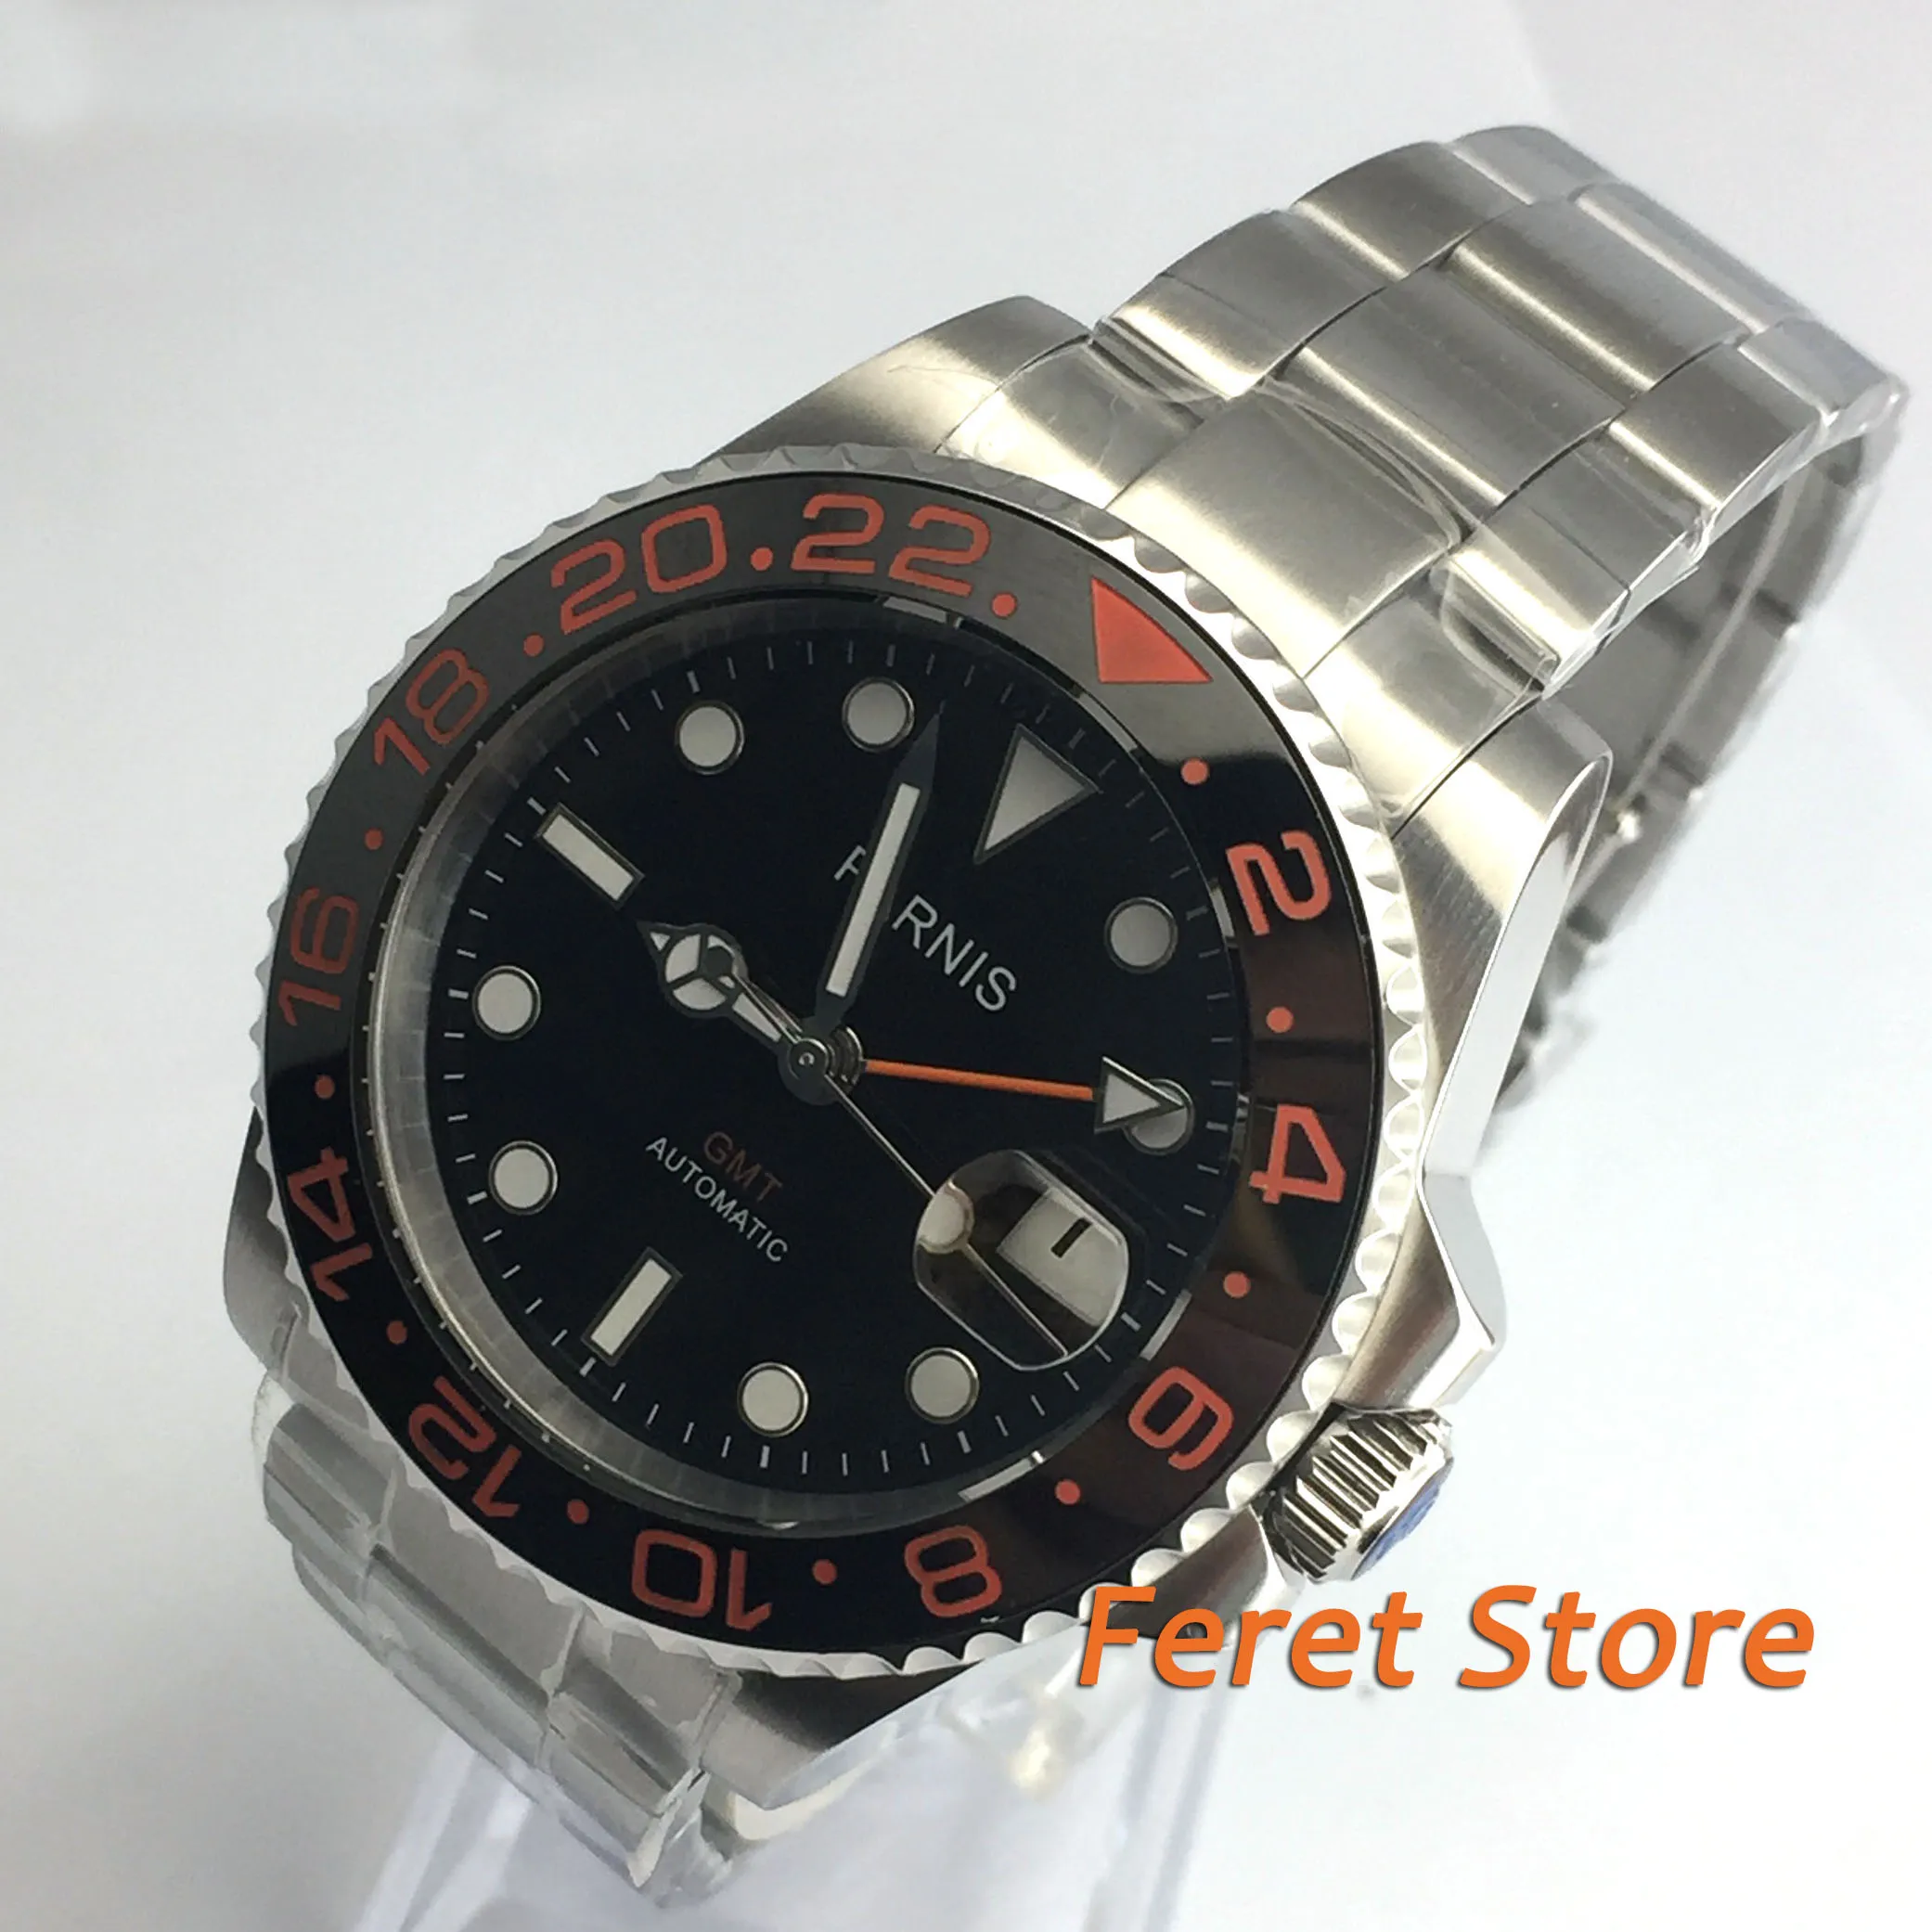 

40mm parnis black dial GMT luminous ceramic bezel sapphire glass automatic movement men's watch pa29